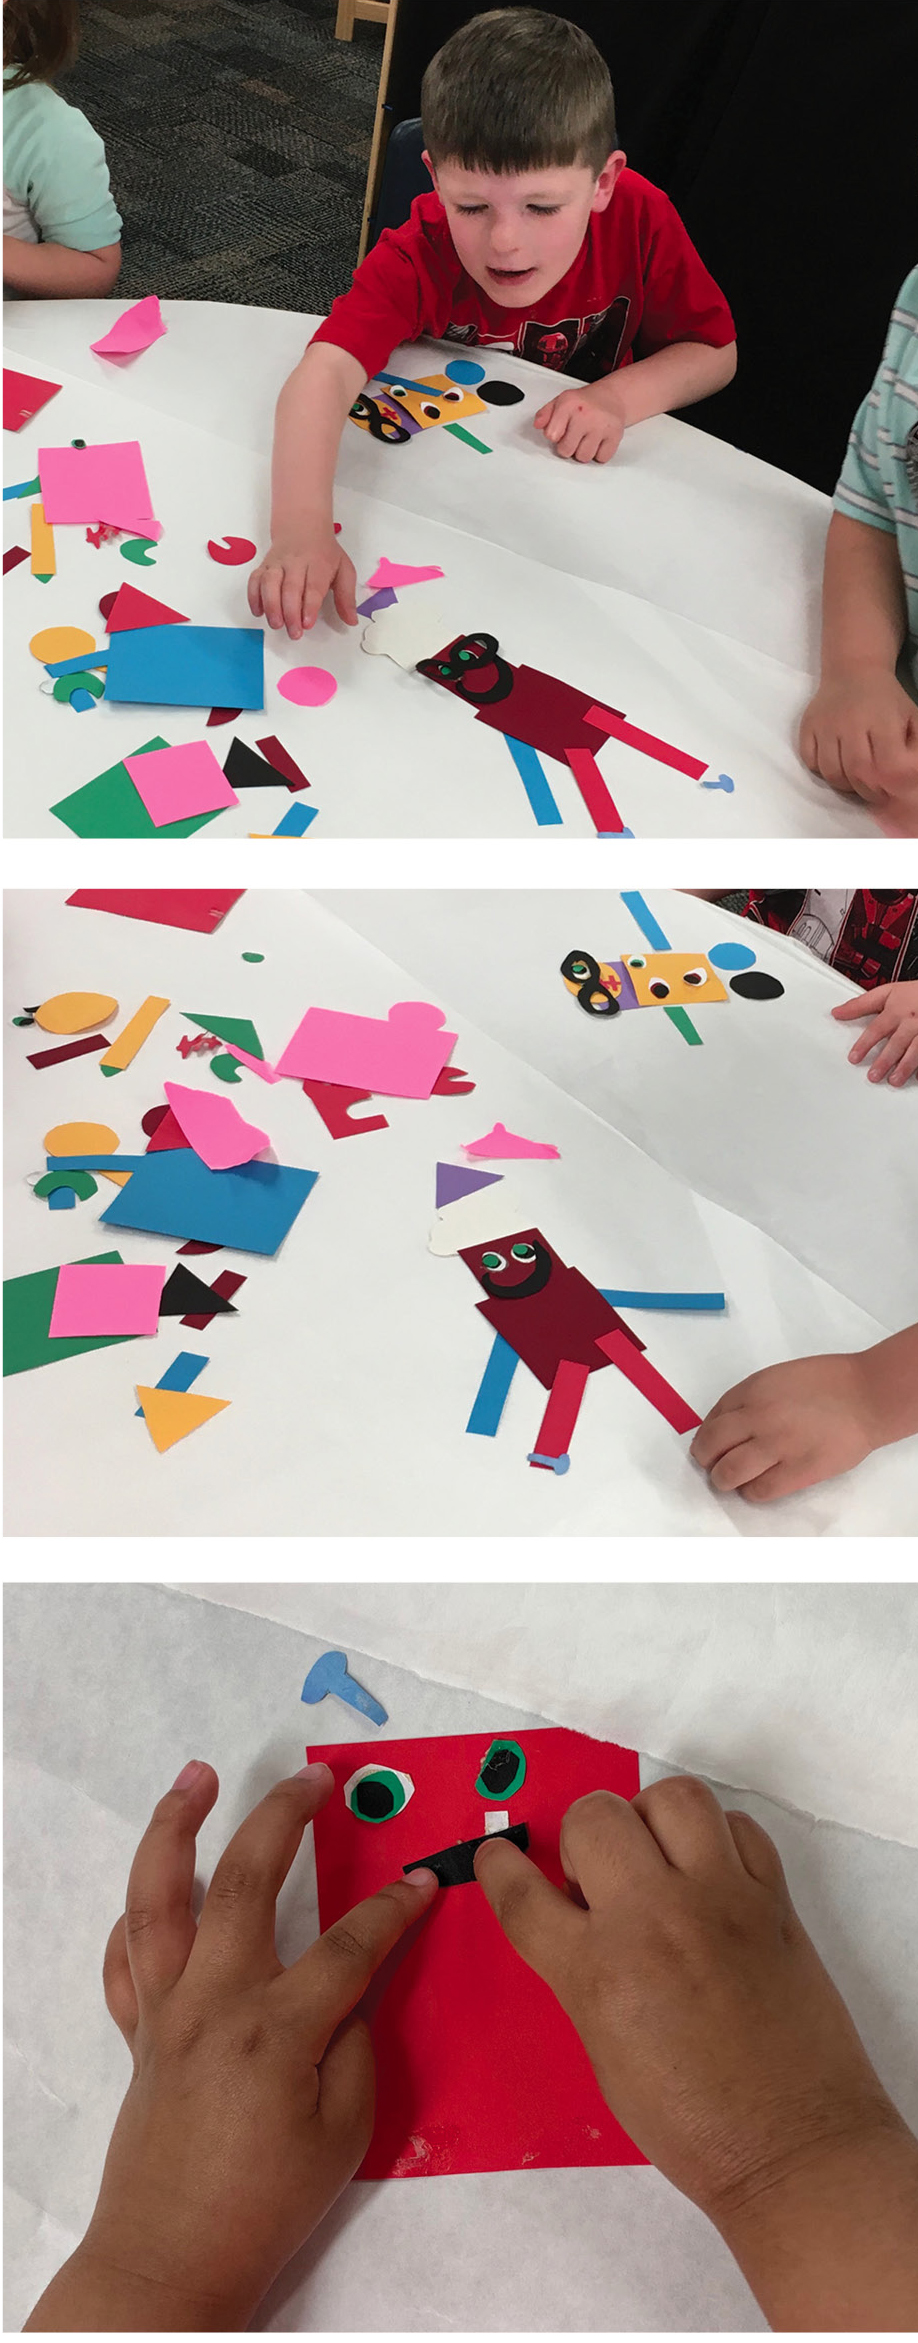 Children assemble robots out of cut-out shapes.